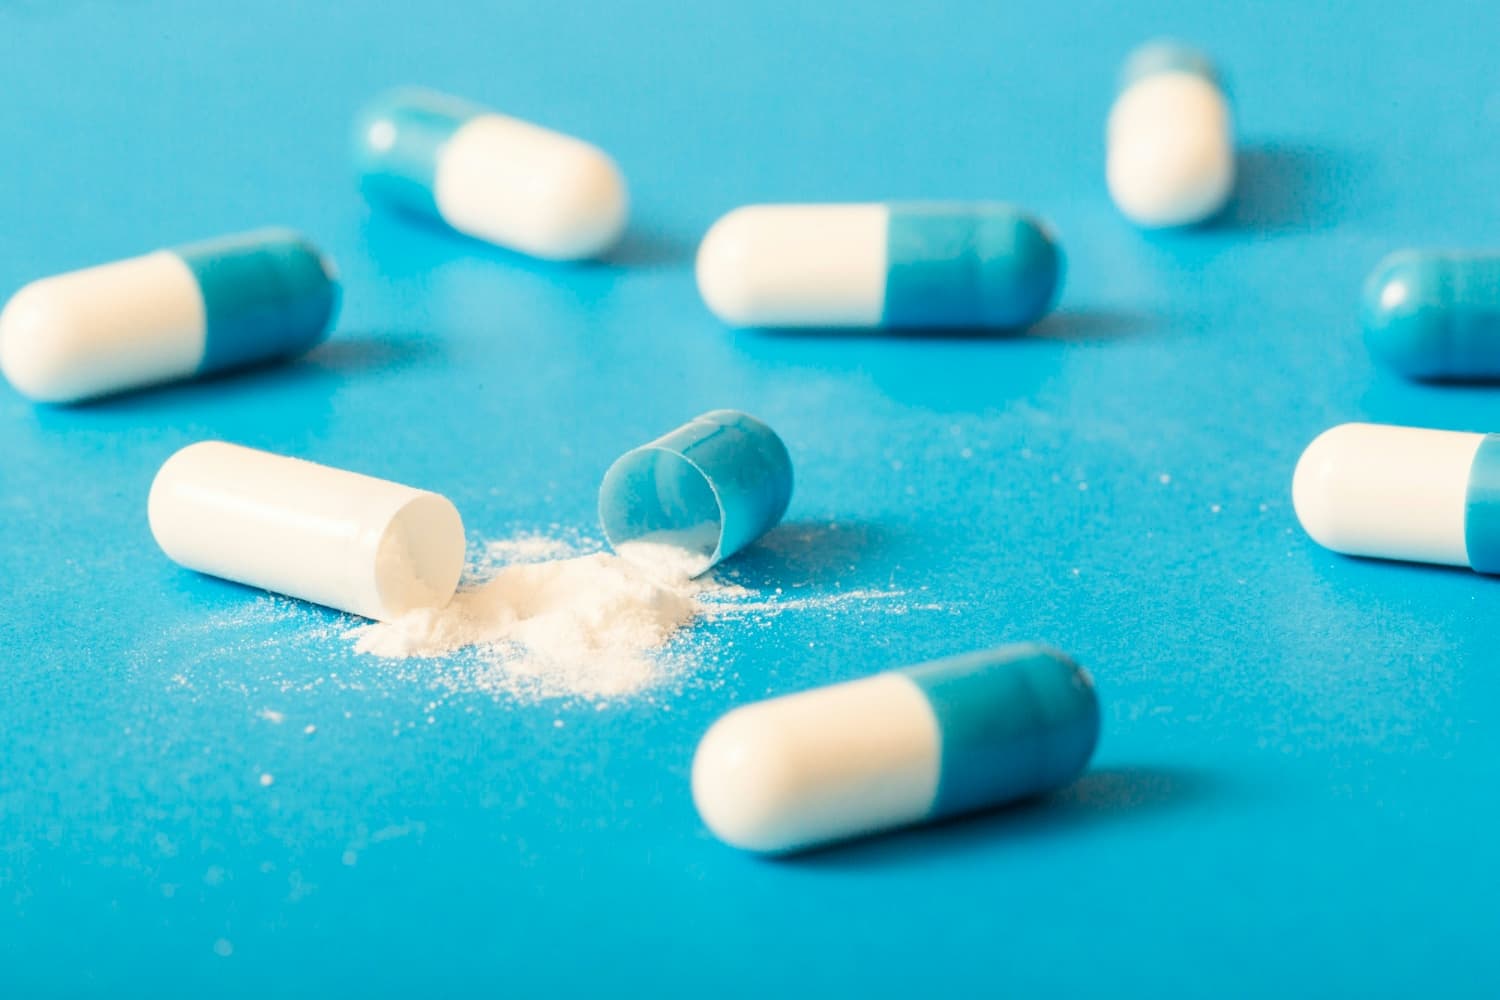 white pharmaceutical powder spilling from broken capsule on blue surface